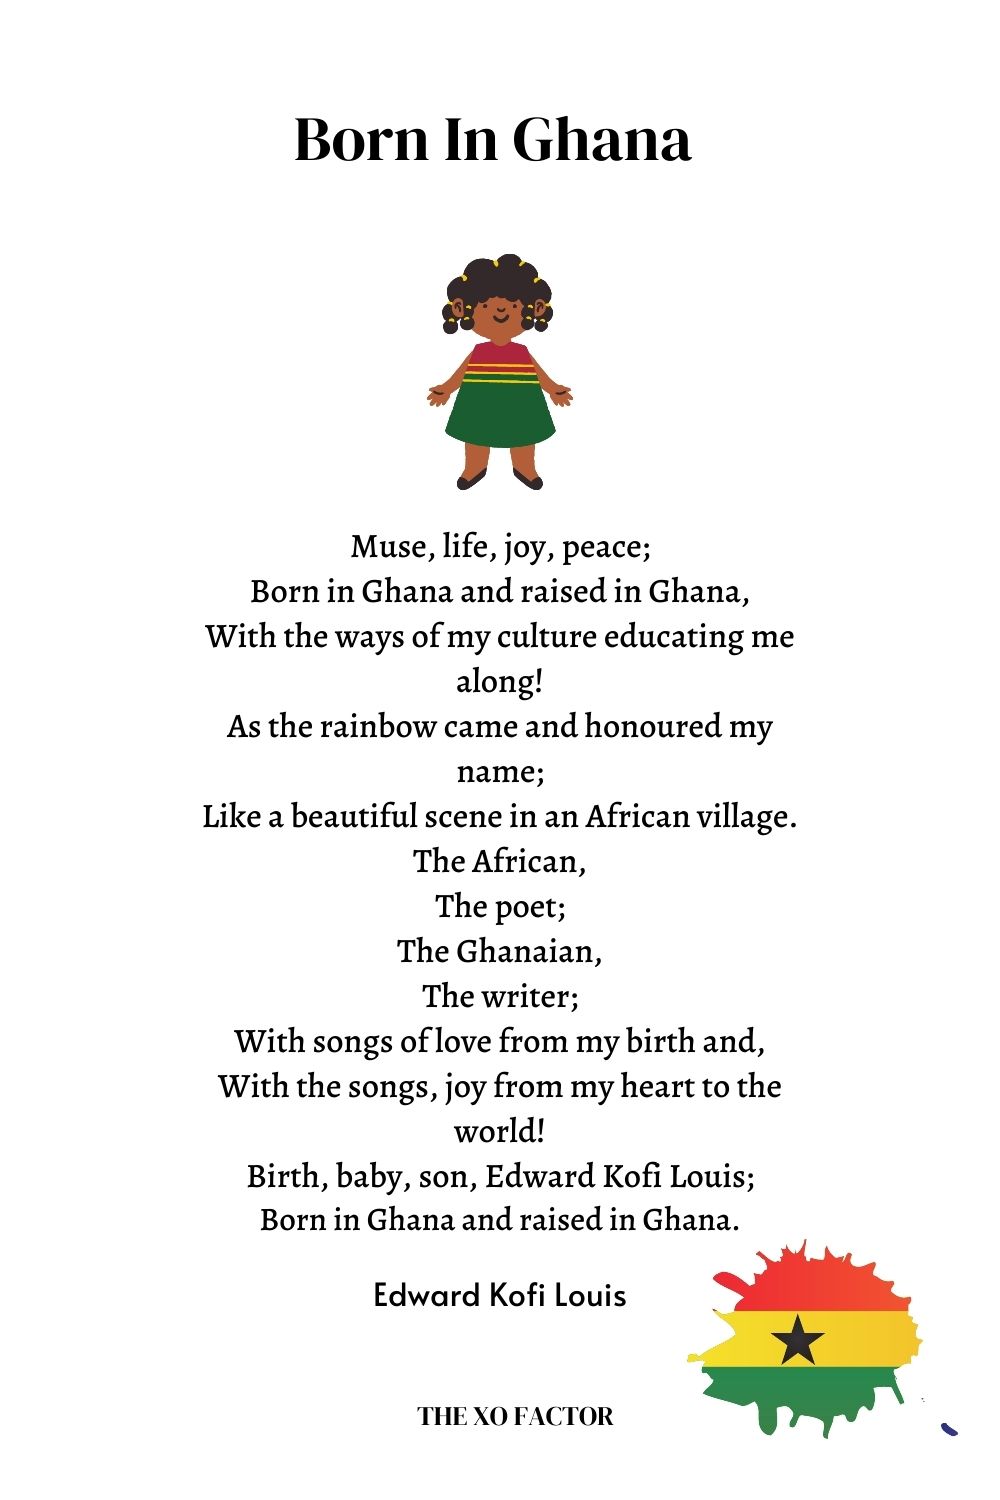 Born In Ghana by Edward Kofi Louis